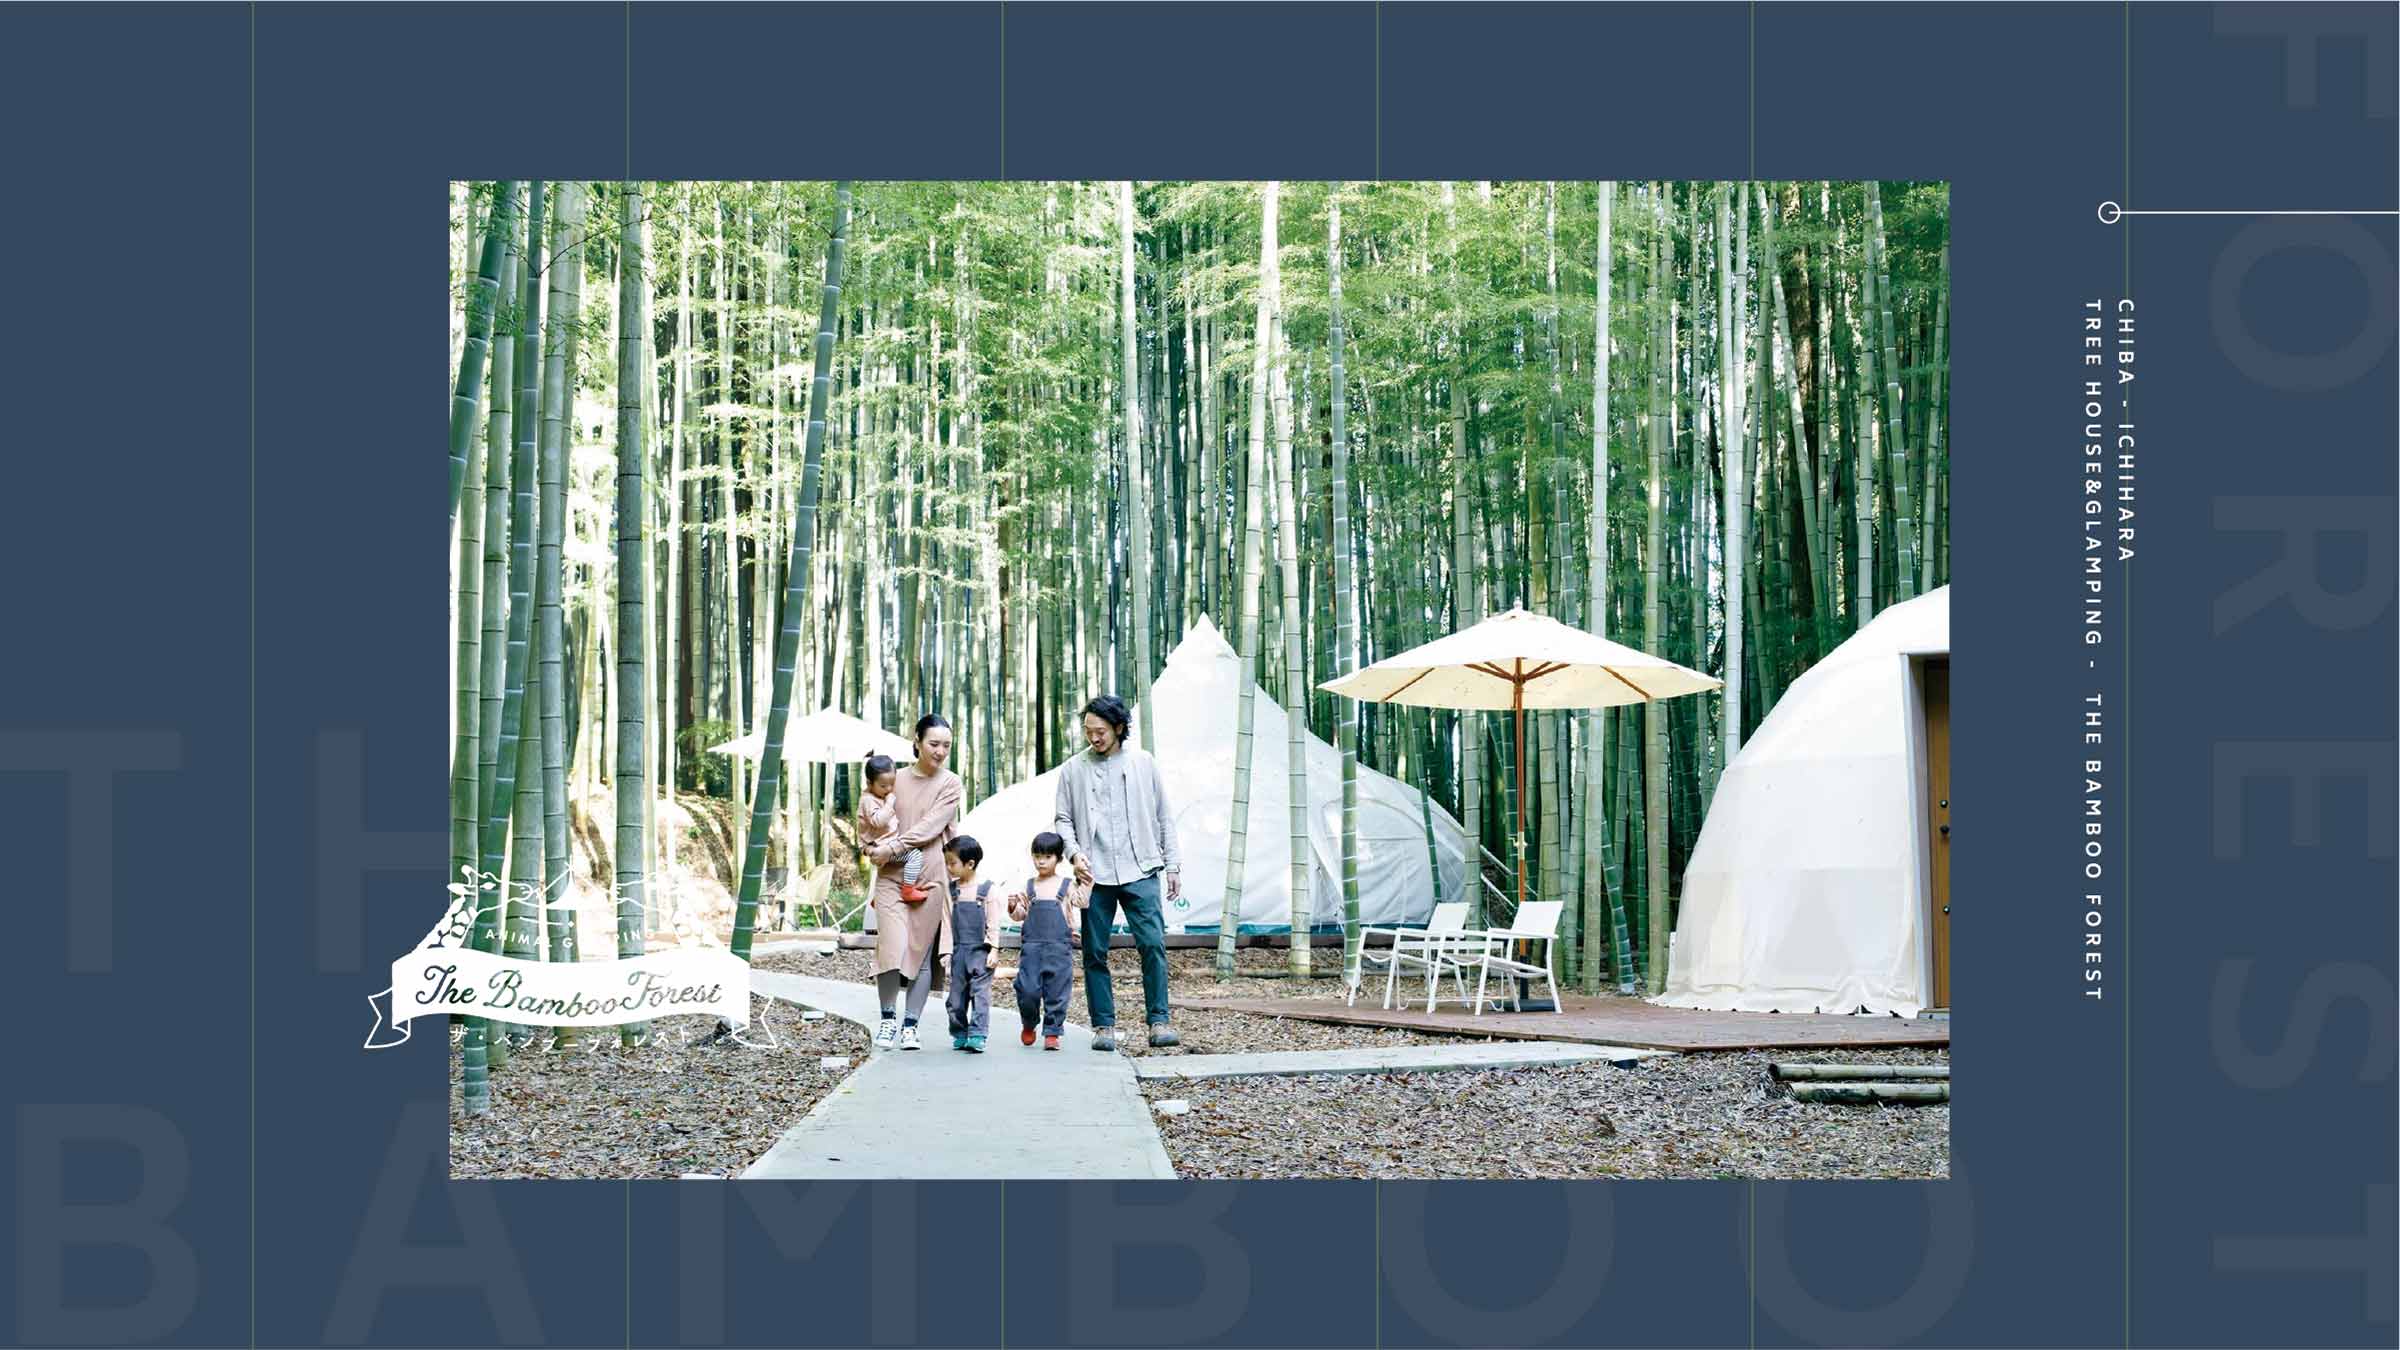 千葉県市原市のグランピング施設 The Bamboo Forest バンブーフォレスト